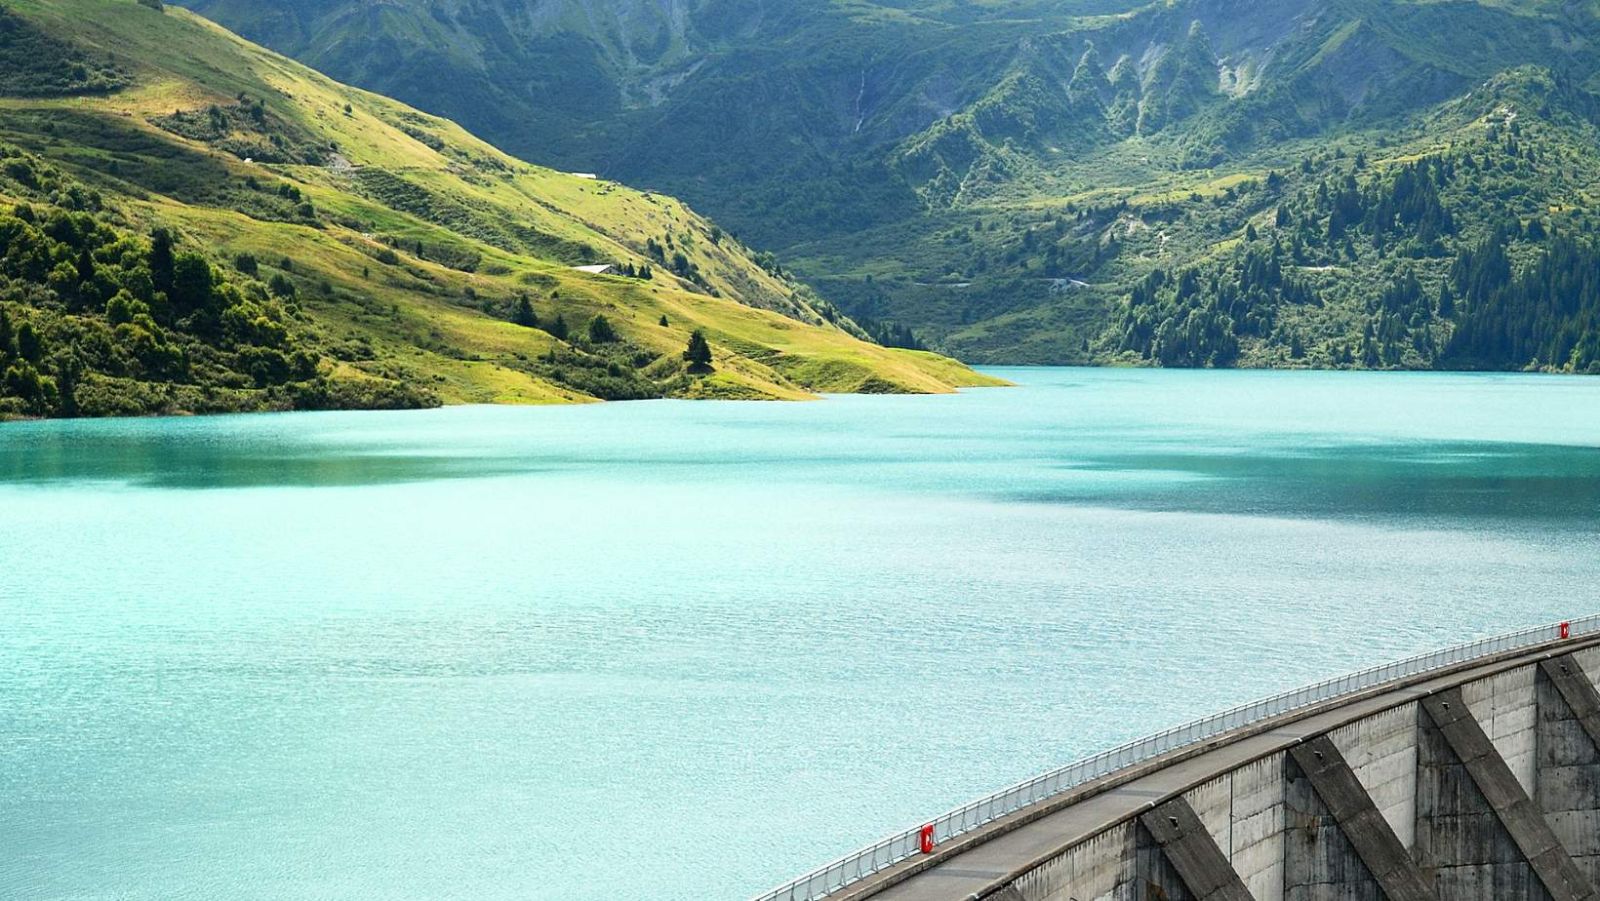 Balade, kayak, pêche... Ce lac est digne des fjords norvégiens à 2h de Lyon